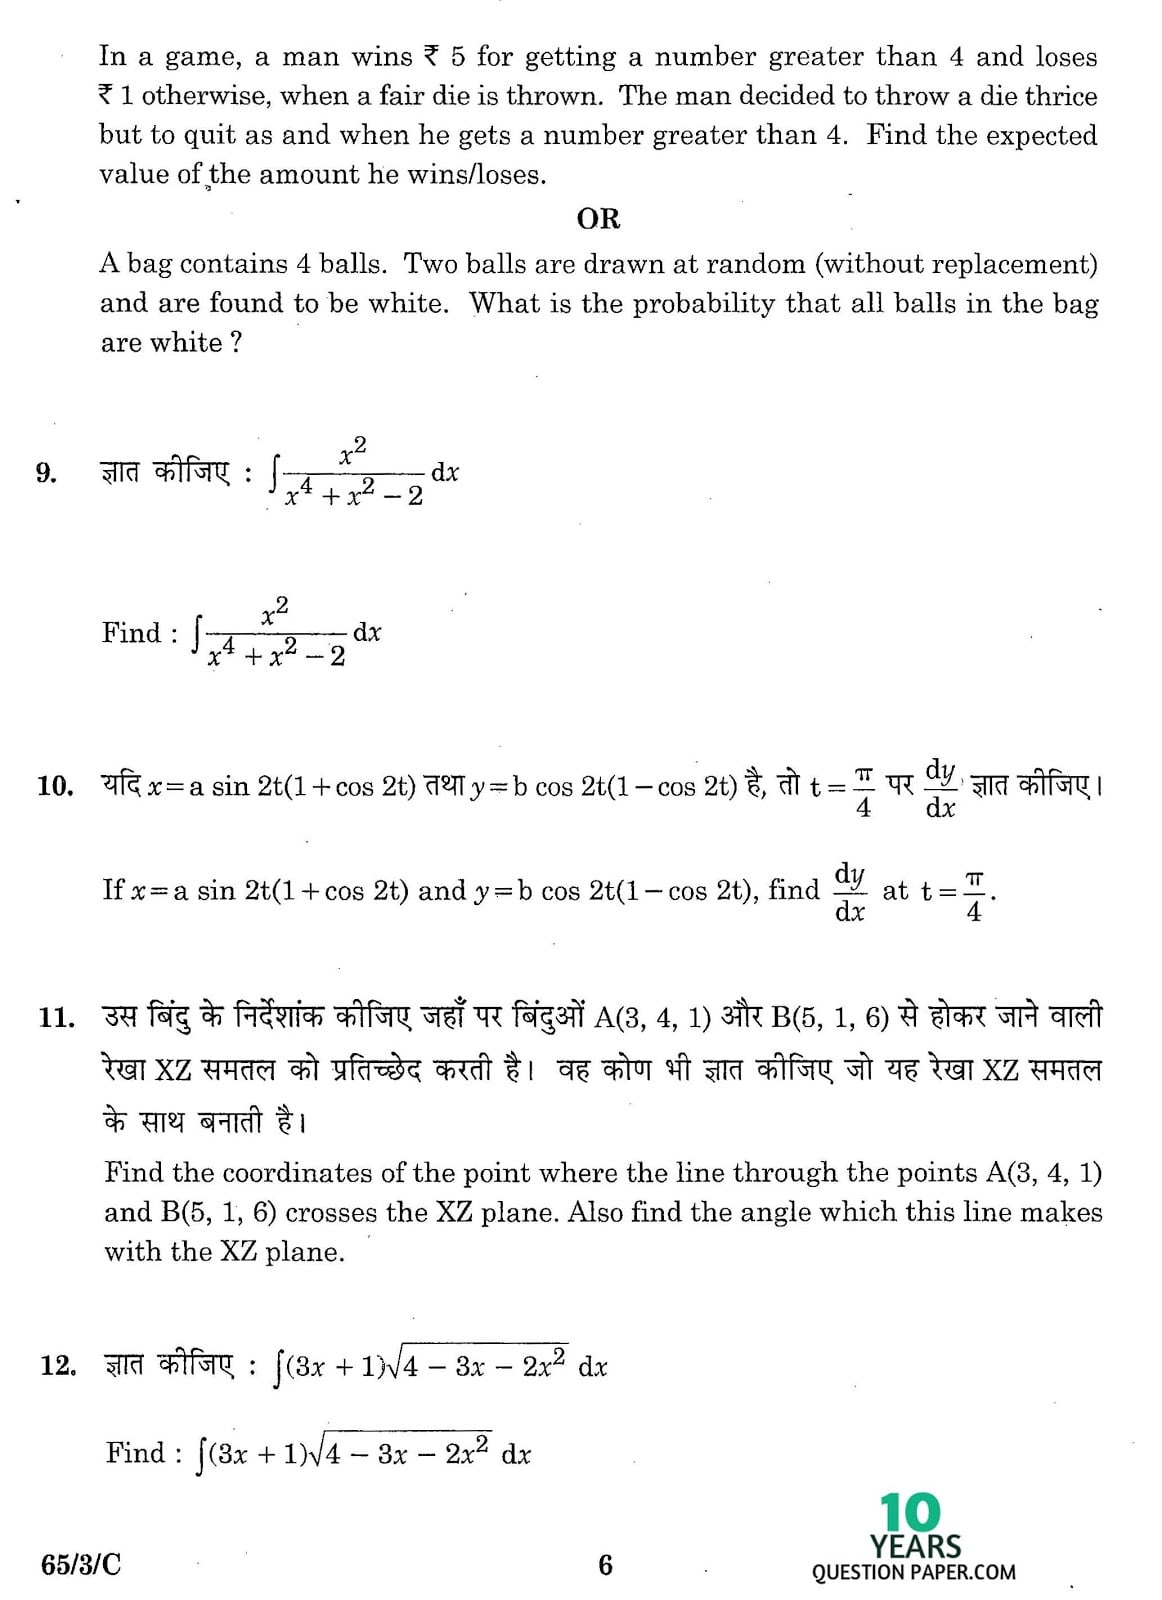 CBSE Class 12 Mathematics 2016 SET-3 Question Paper